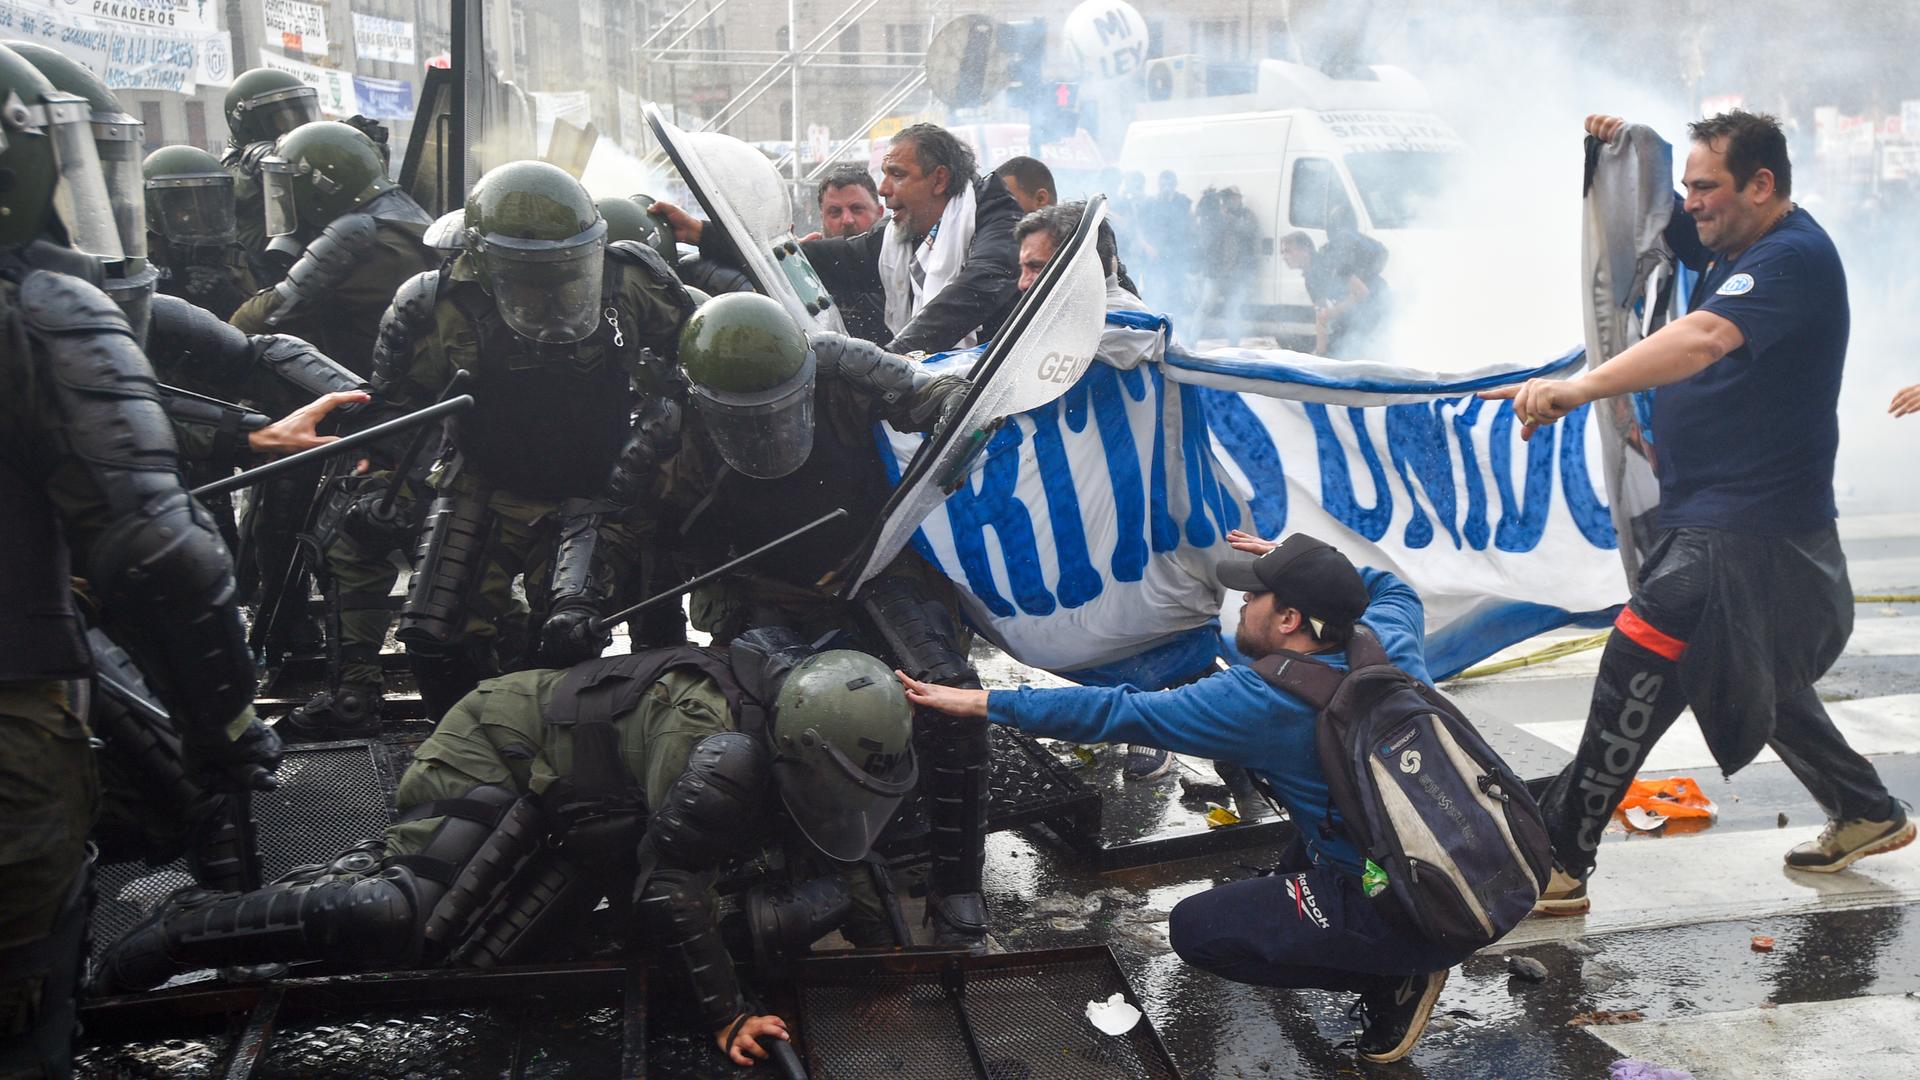 Polizisten setzten Schlagstöcke und Tränengas gegen Demonstranten ein.